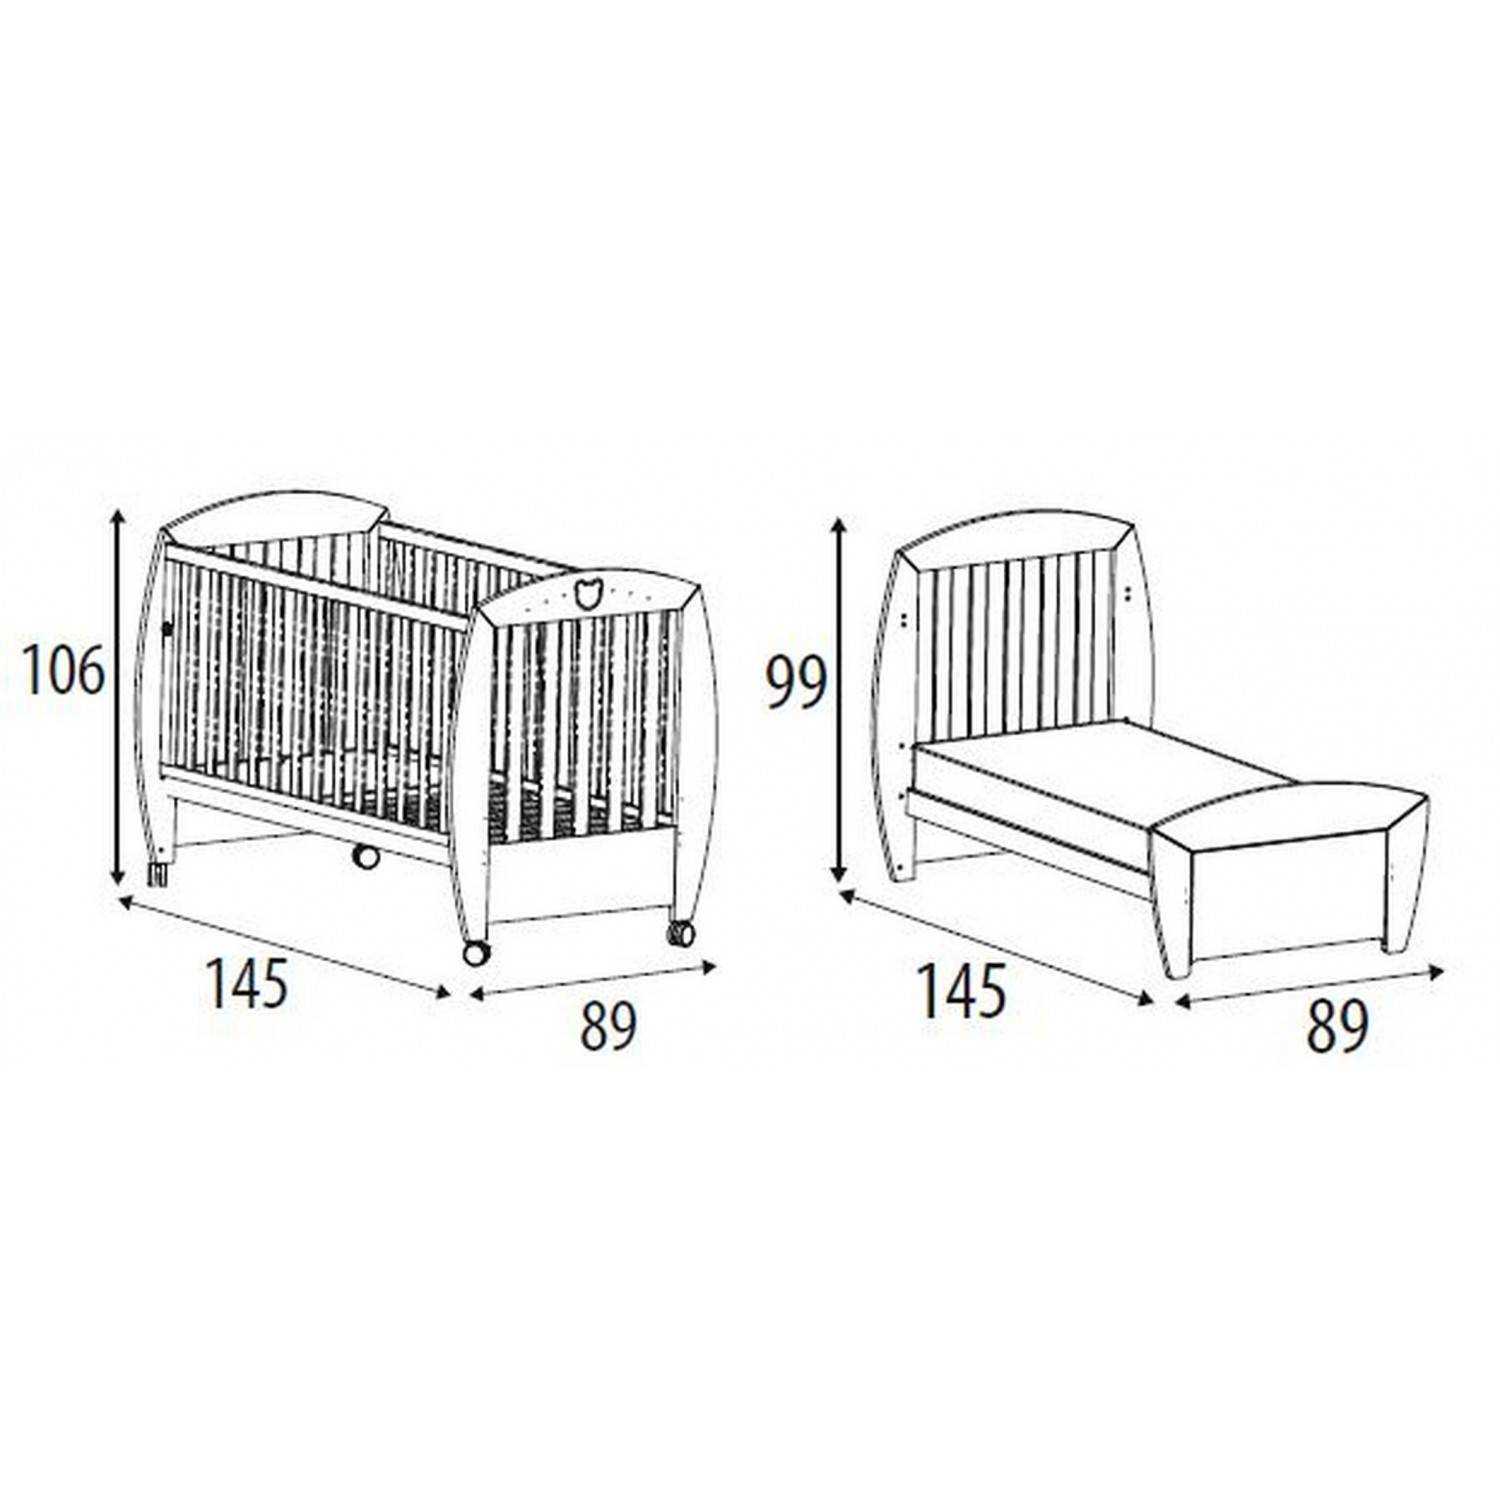 Круглые кроватки для новорожденных (19 фото): размер детских кроватей и постельного белья, а также наборов 3 в 1, отзывы